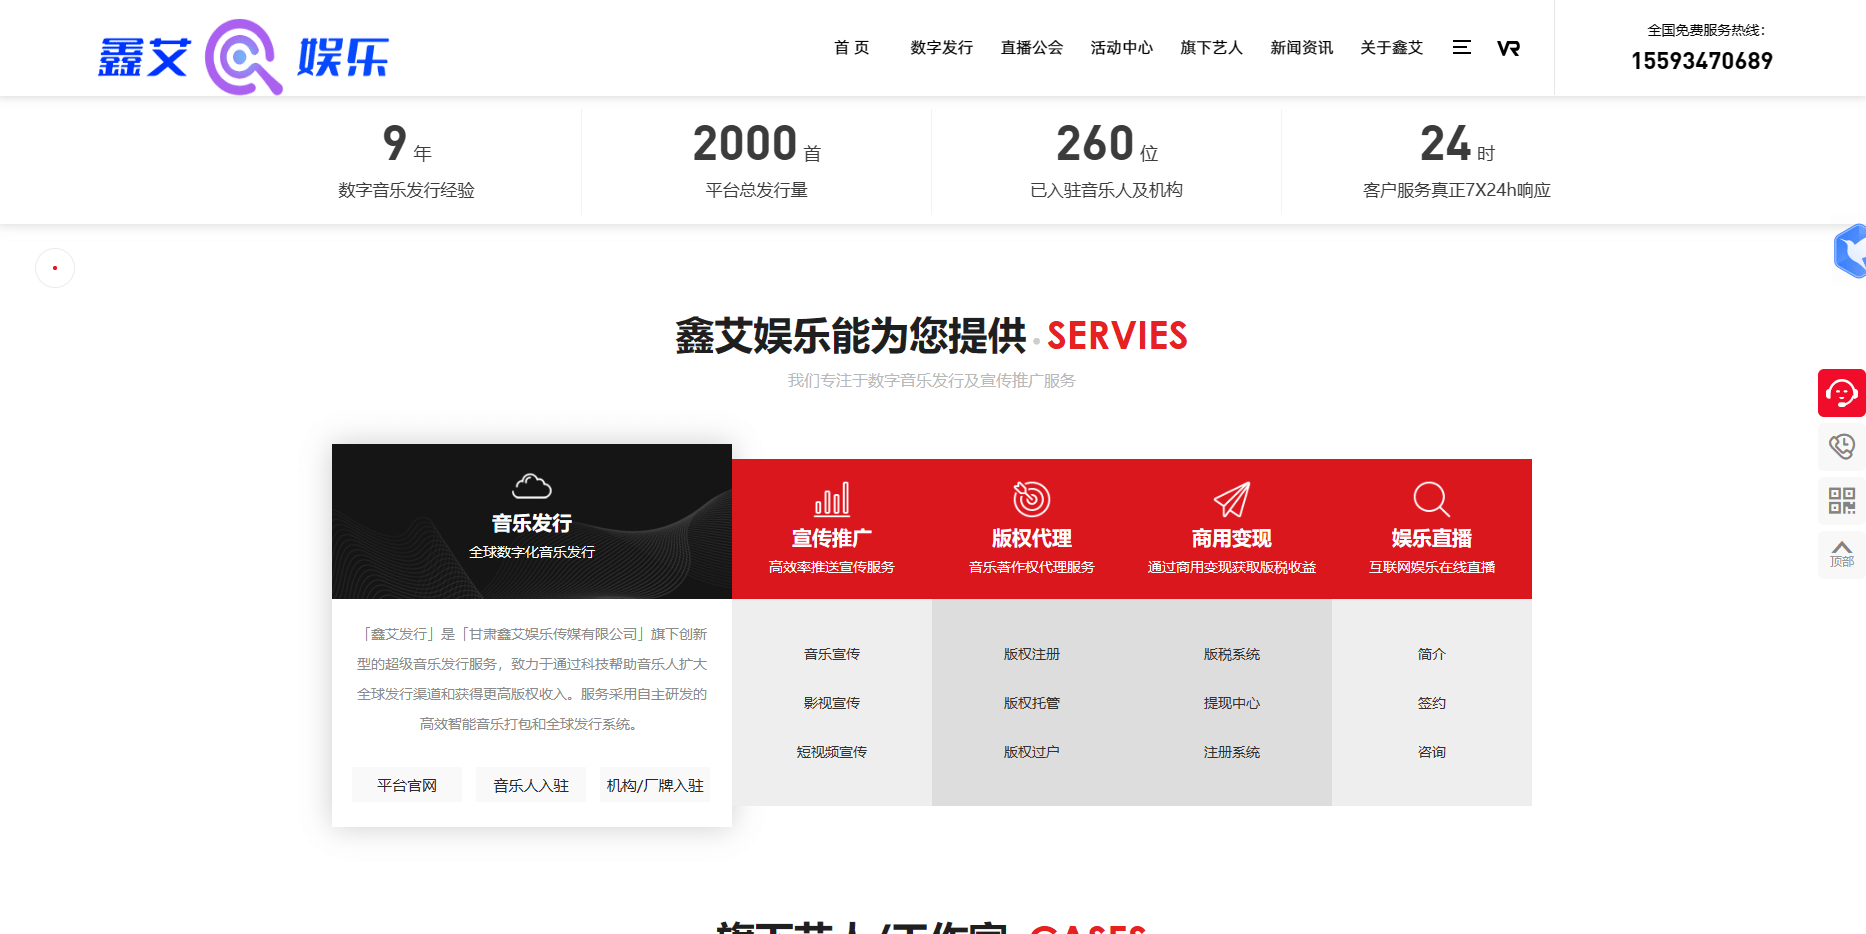 鑫艾娱爱游戏乐—全球数字音乐发行服务平台(图1)